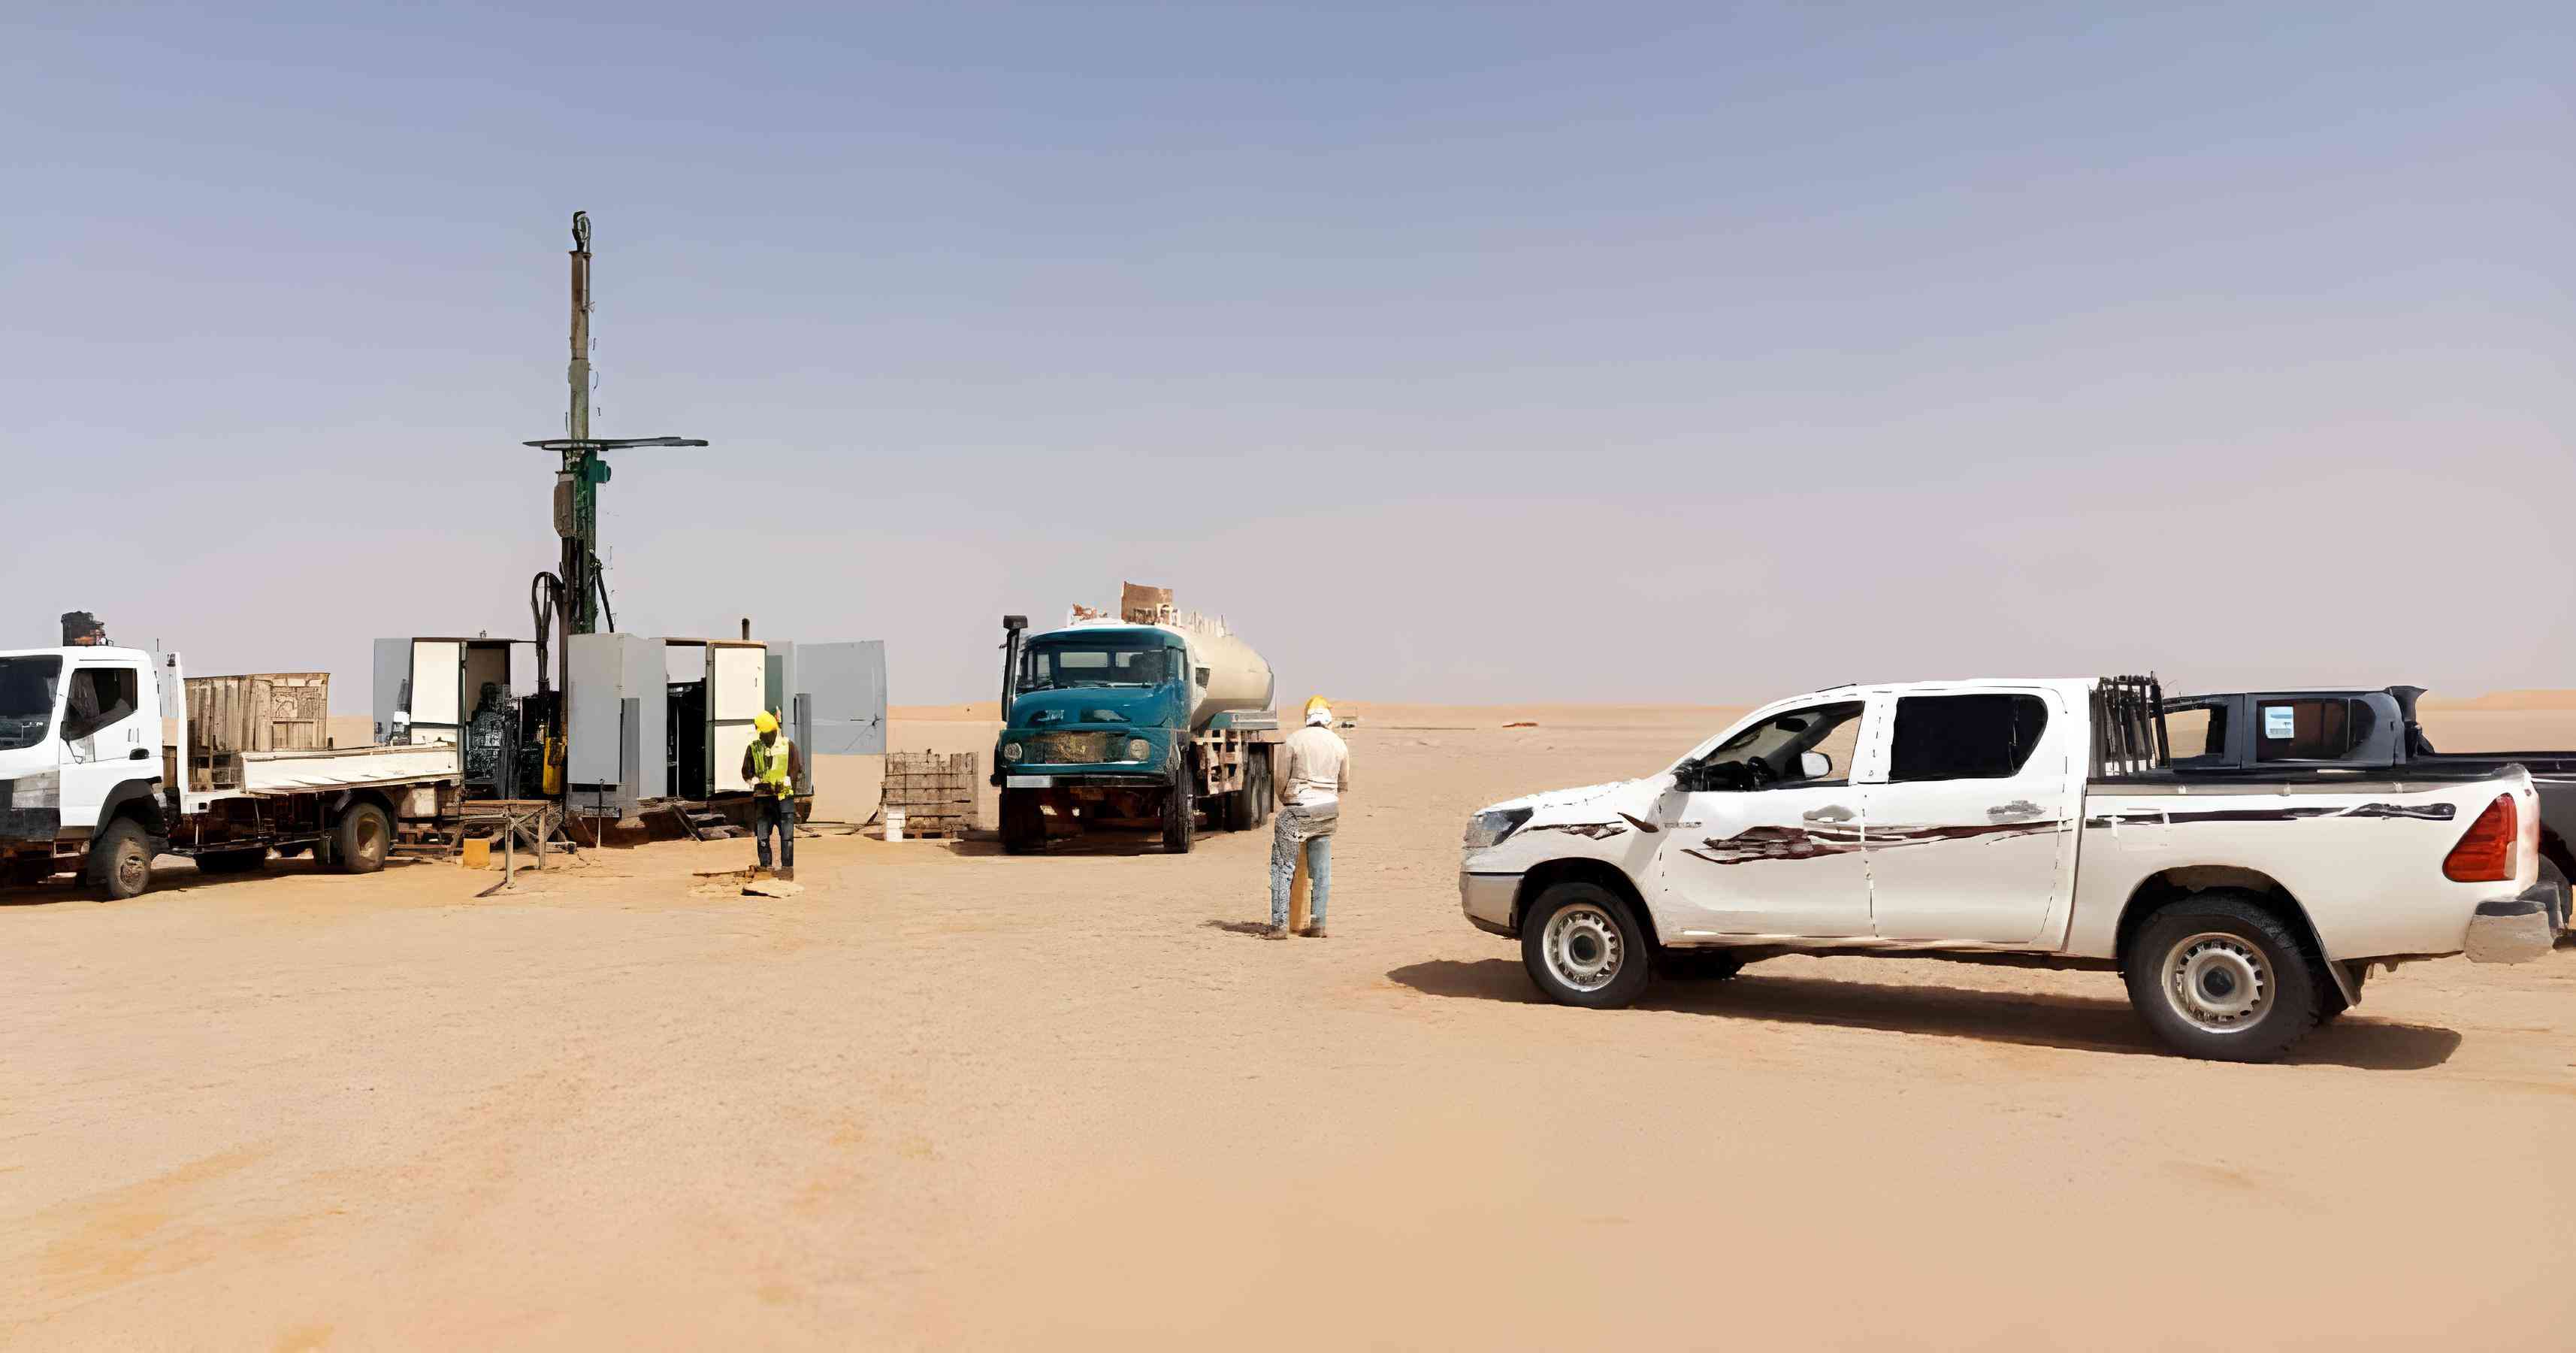     موريتانيا...الاعلان عن اكتشاف موارد جديدة في منجم تيرس لليورانيوم  